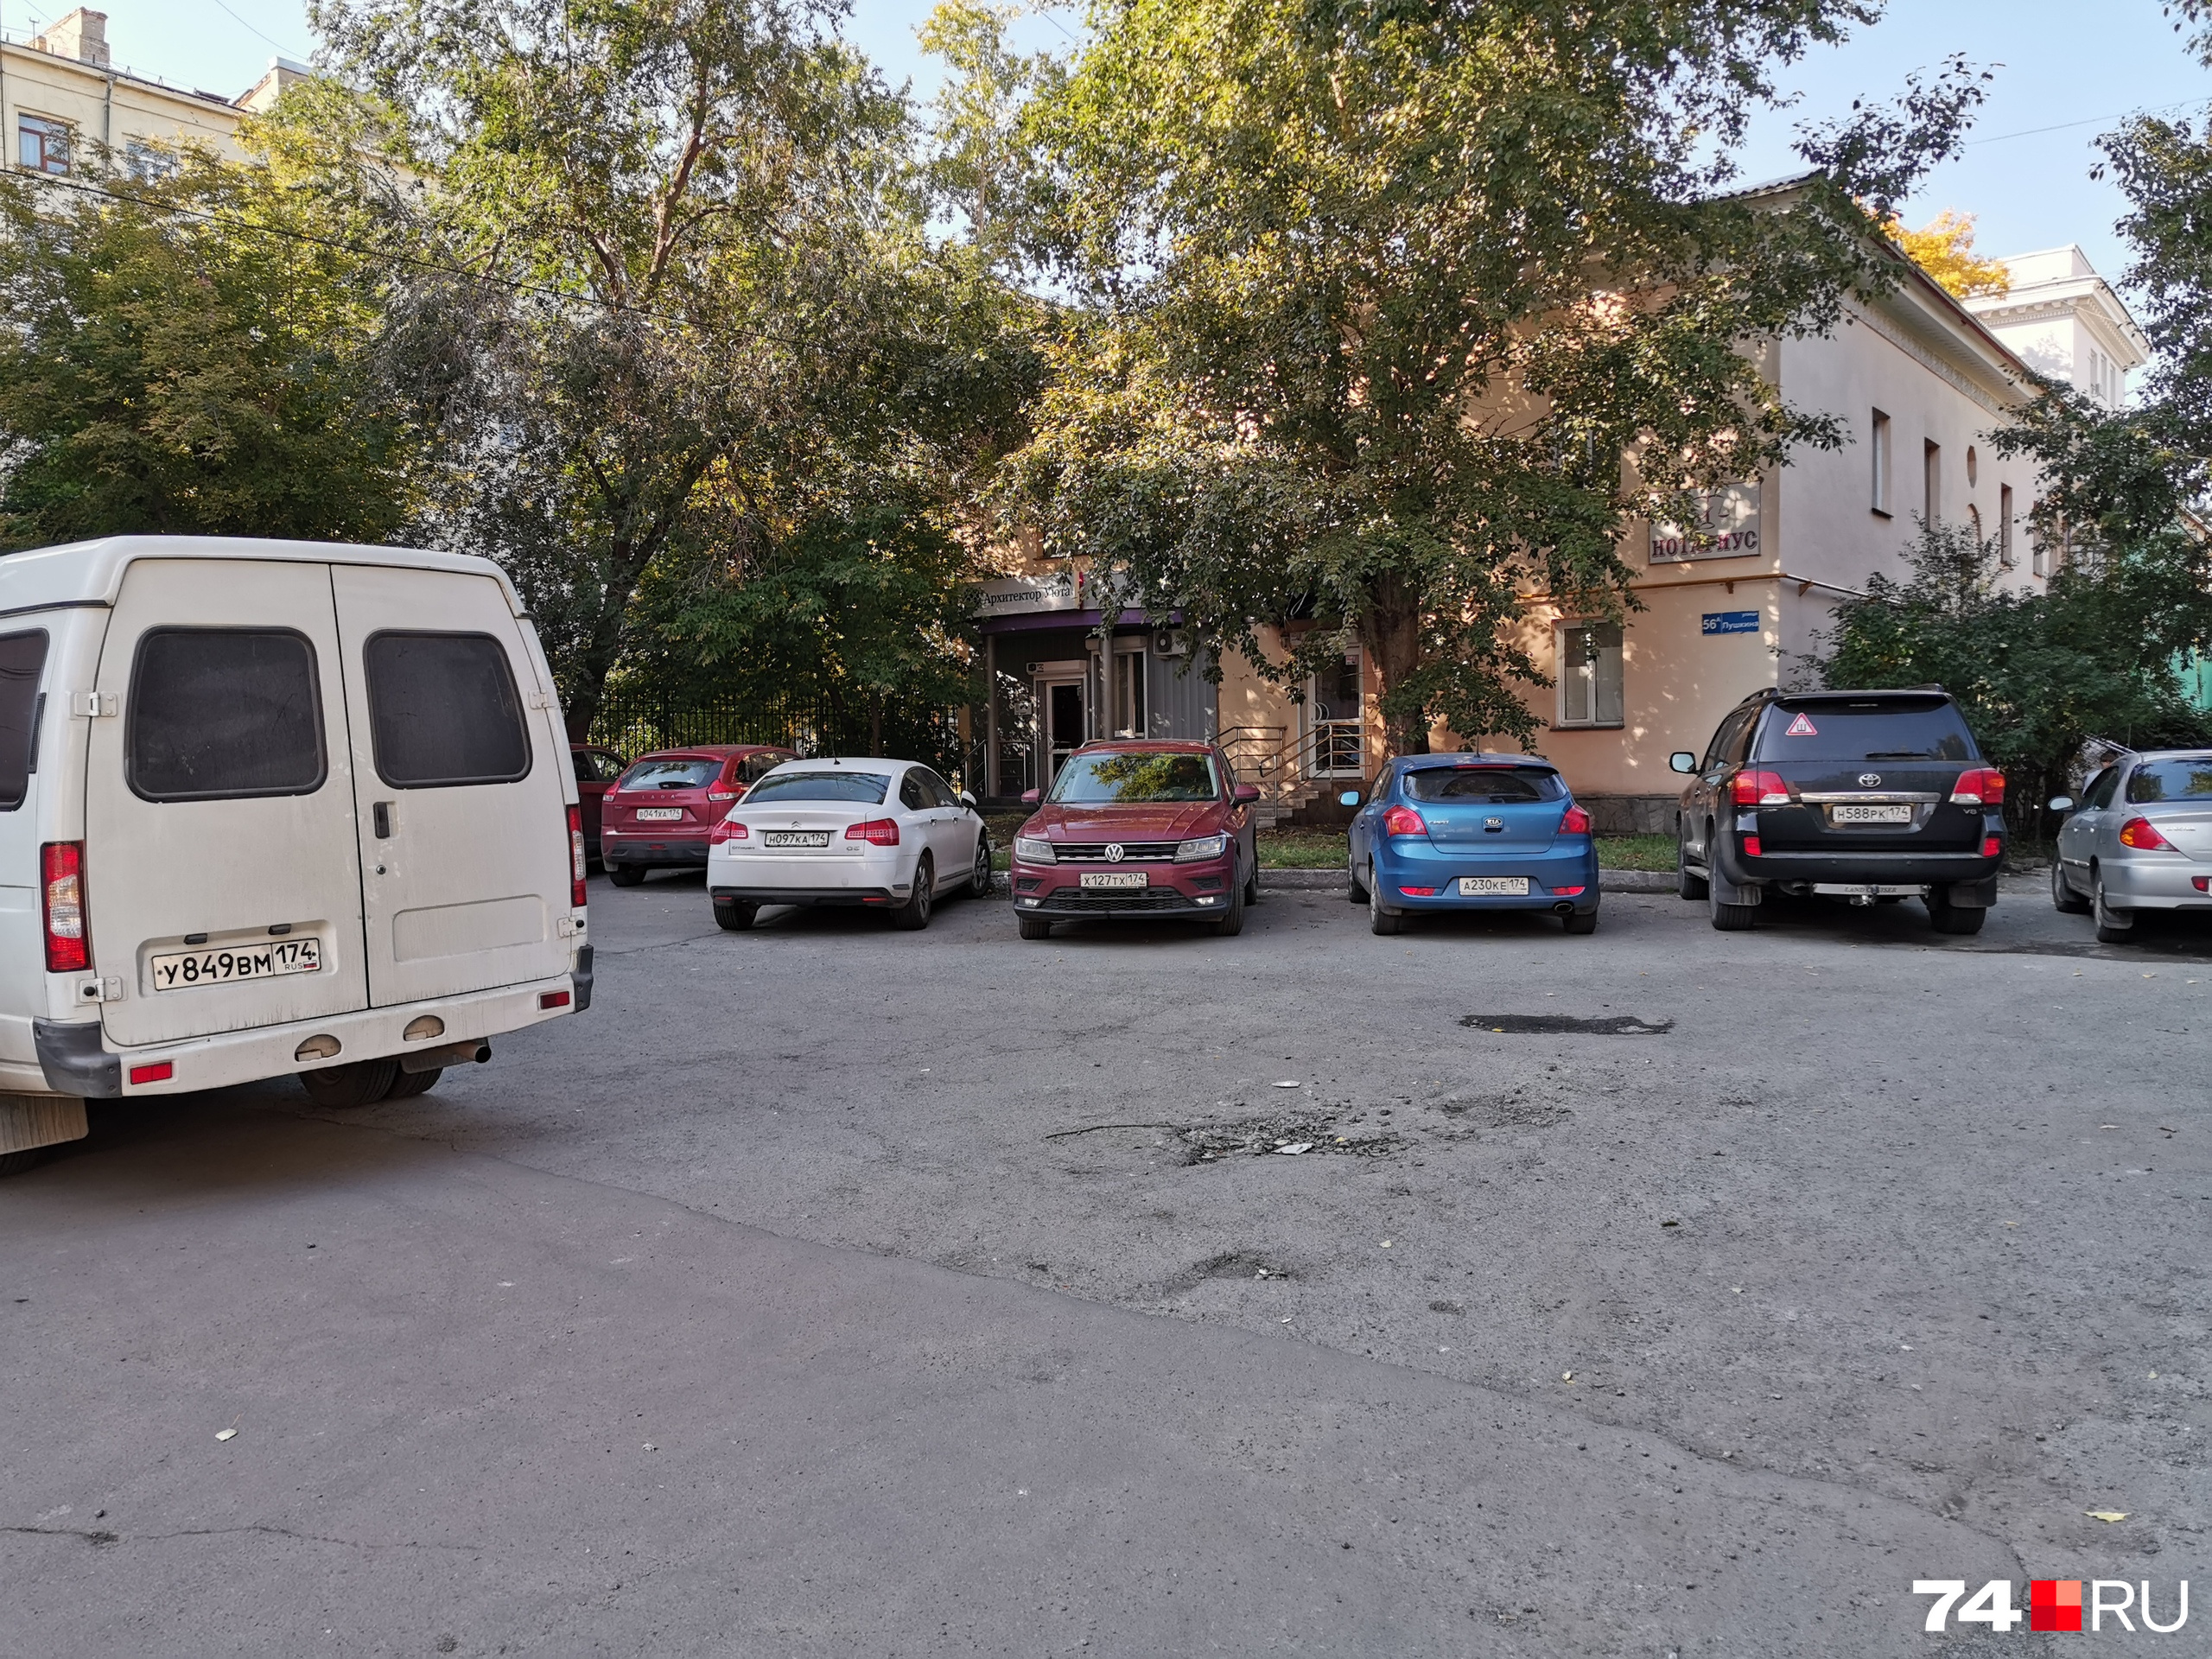 Штаб Навального в Челябинске находится в доме № 56а на улице Пушкина